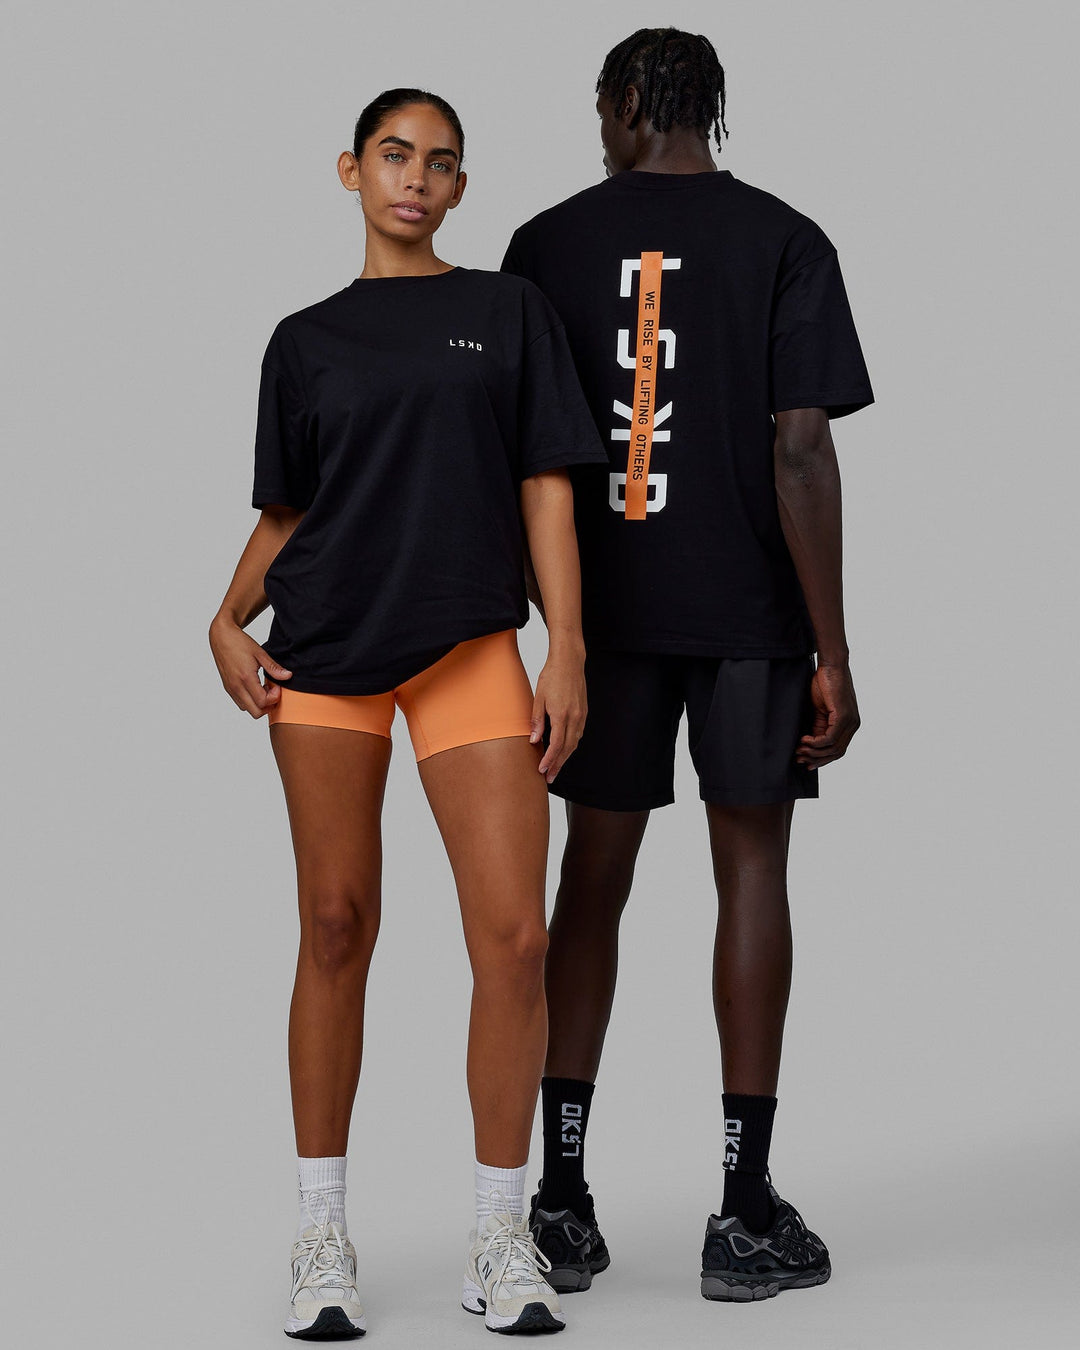 Duo wearing Unisex Strike Through FLXCotton Tee Oversize - Black-White